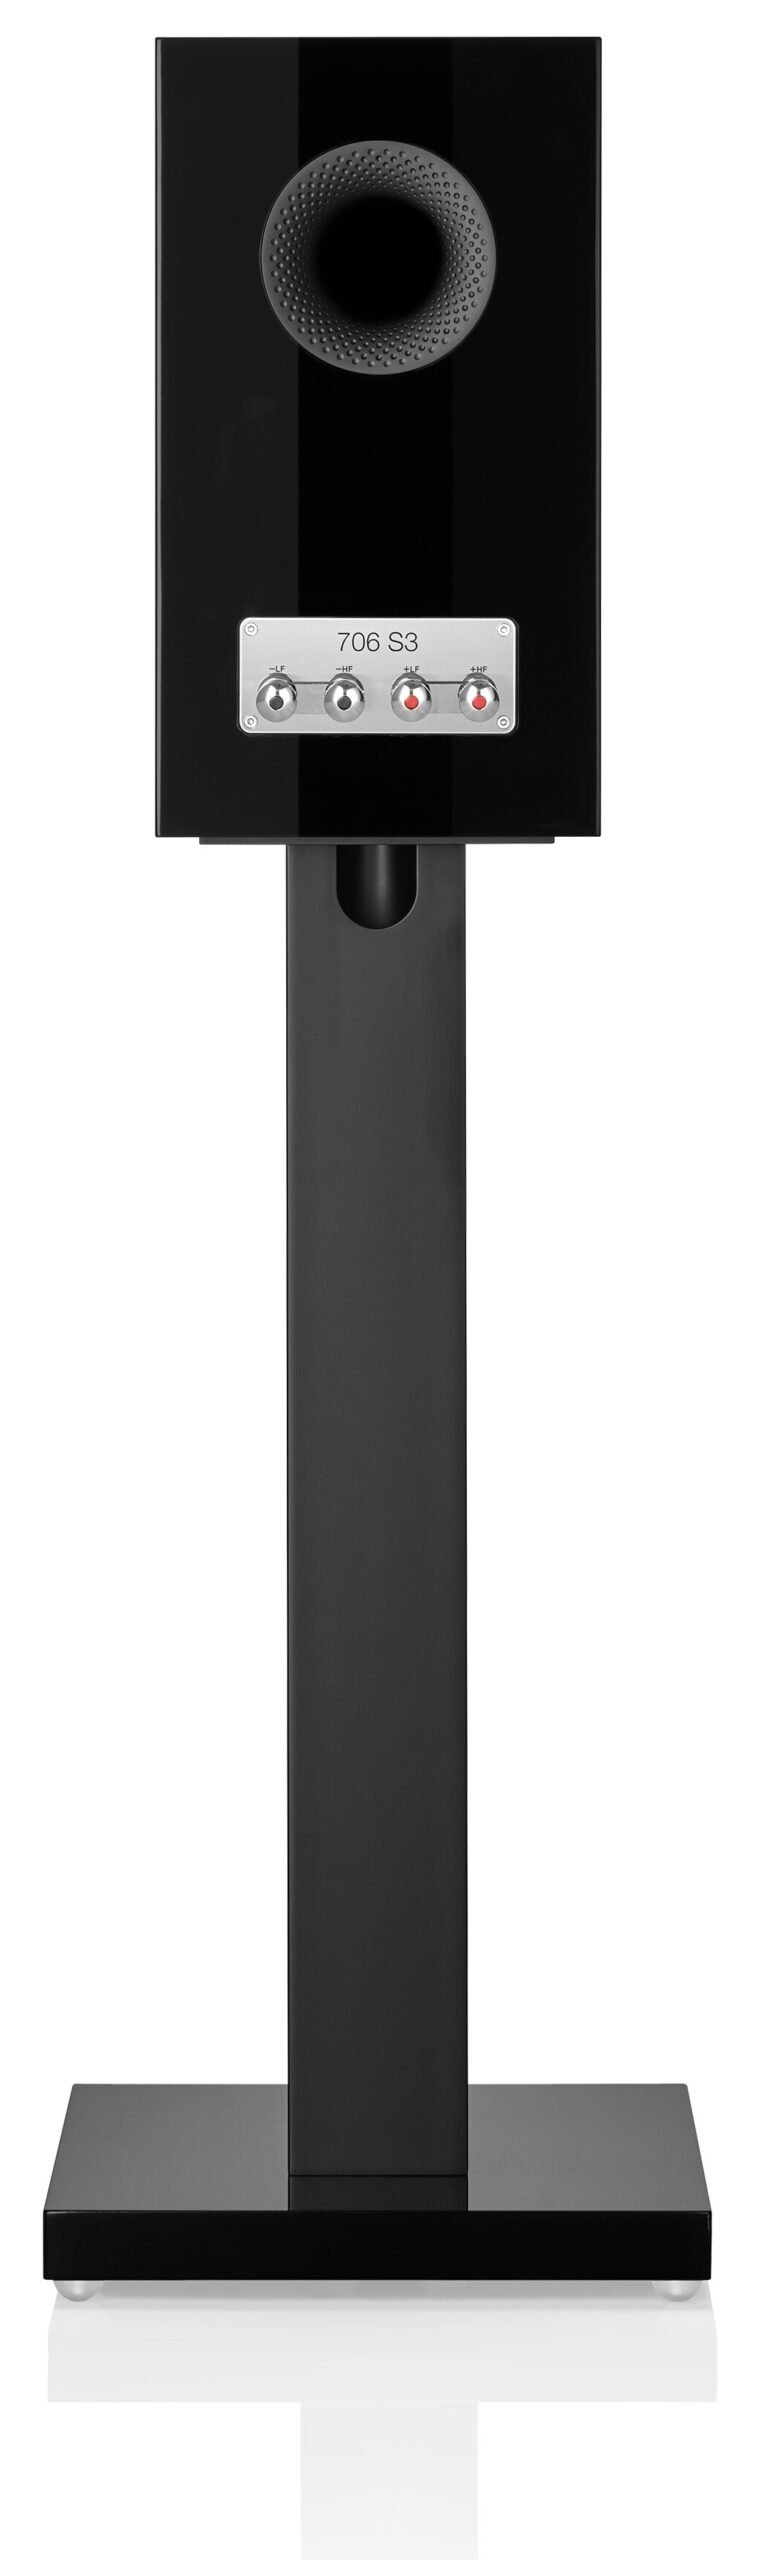 Bowers & Wilkins 706 S3 gloss black - achterkant - Boekenplank speaker